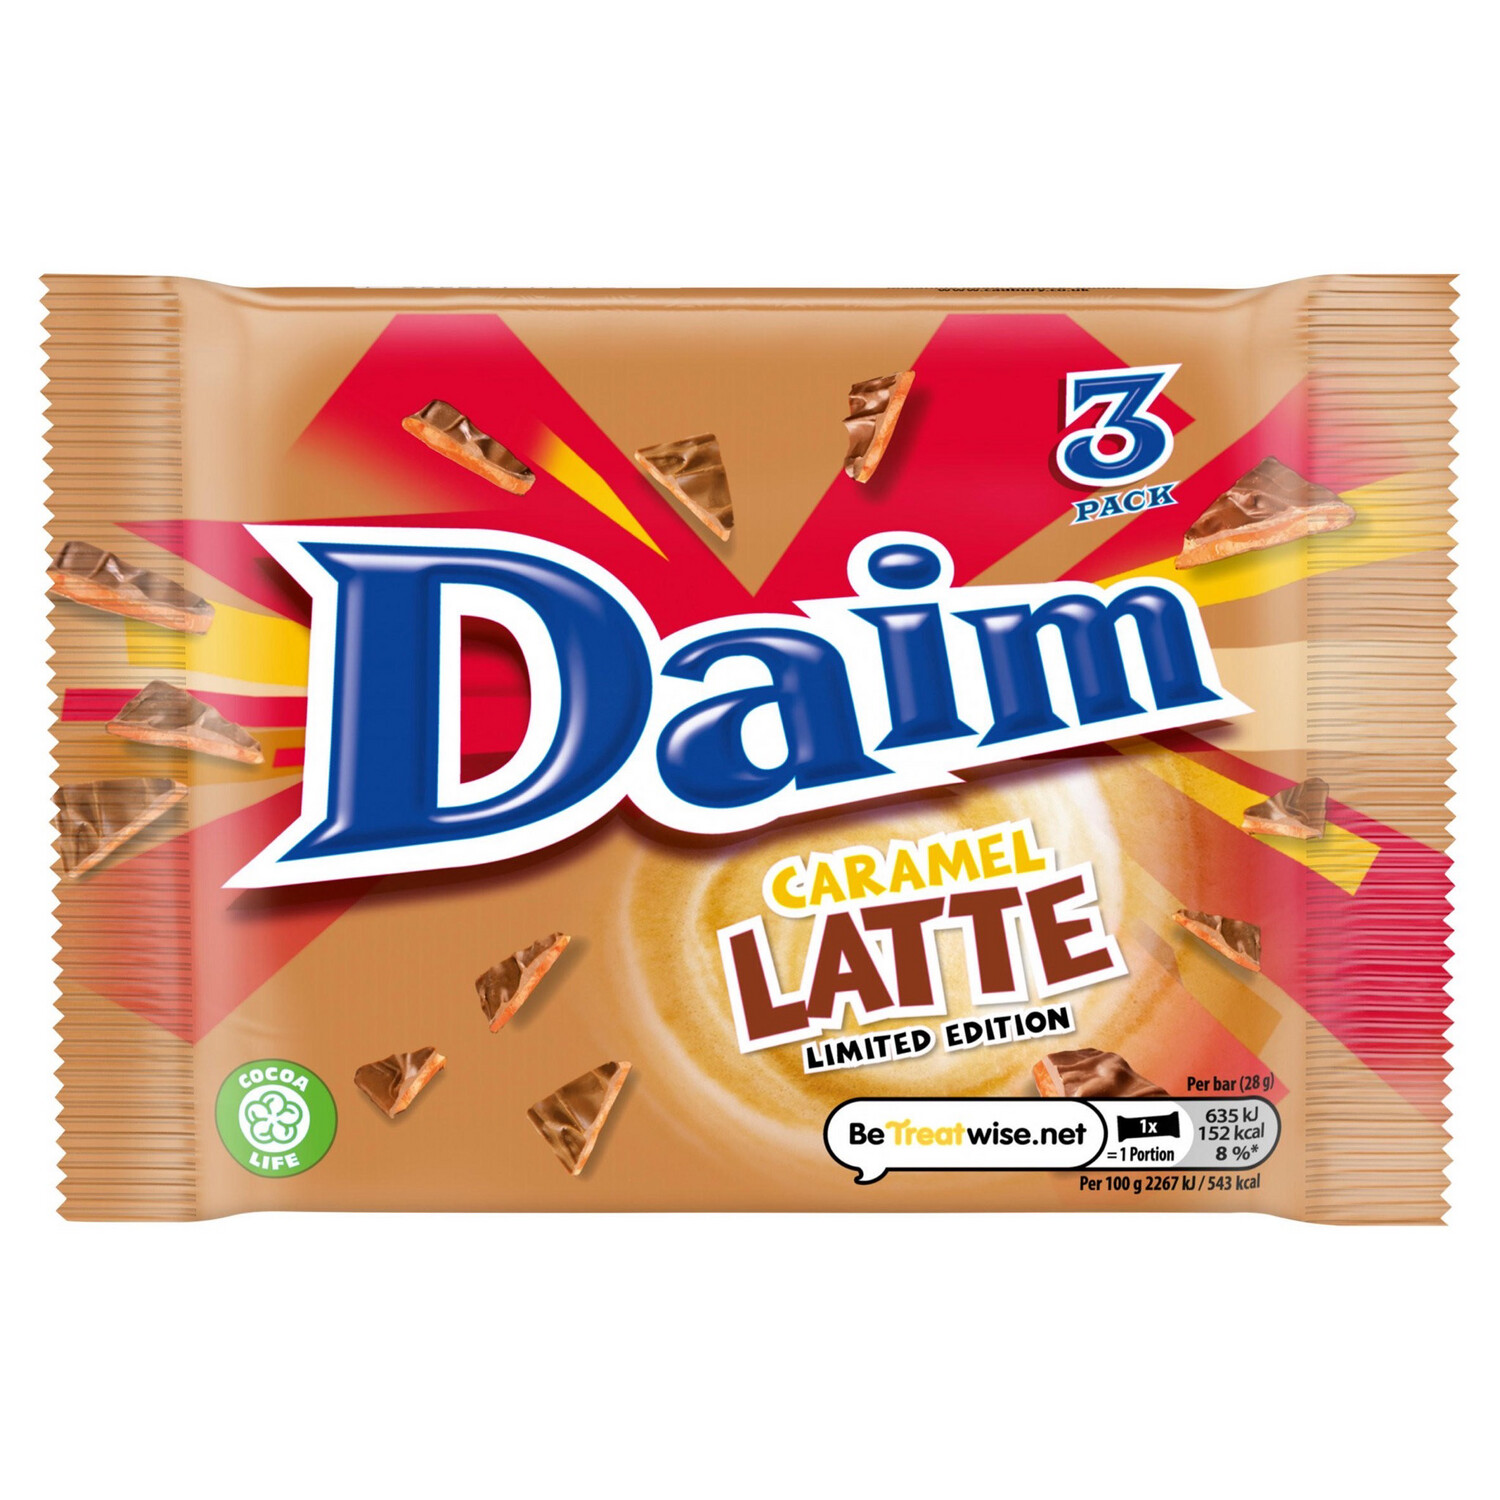 Daim Latte 2 For £1.50